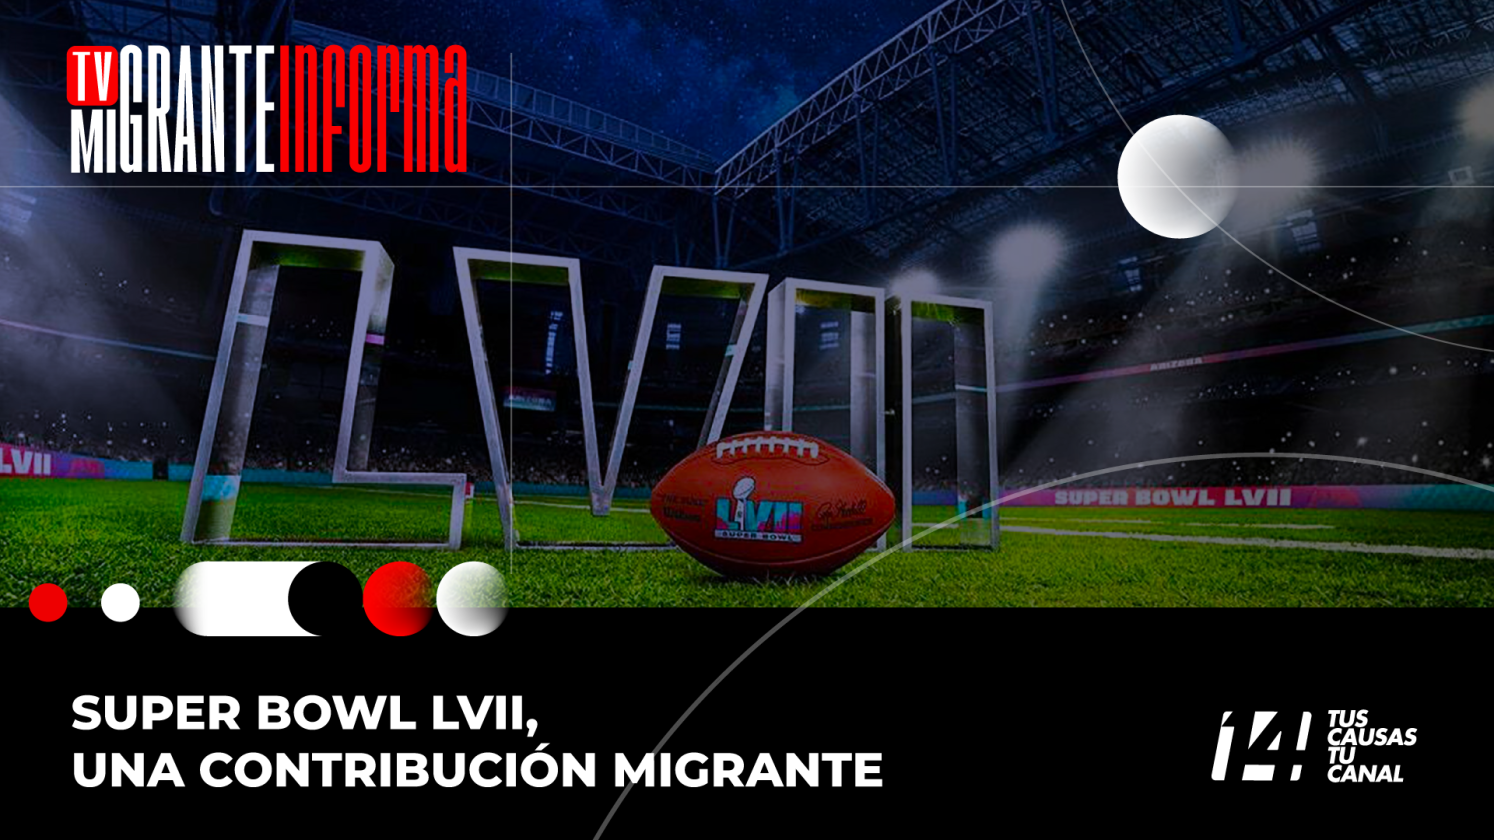 Super Bowl LVII, una contribución migrante